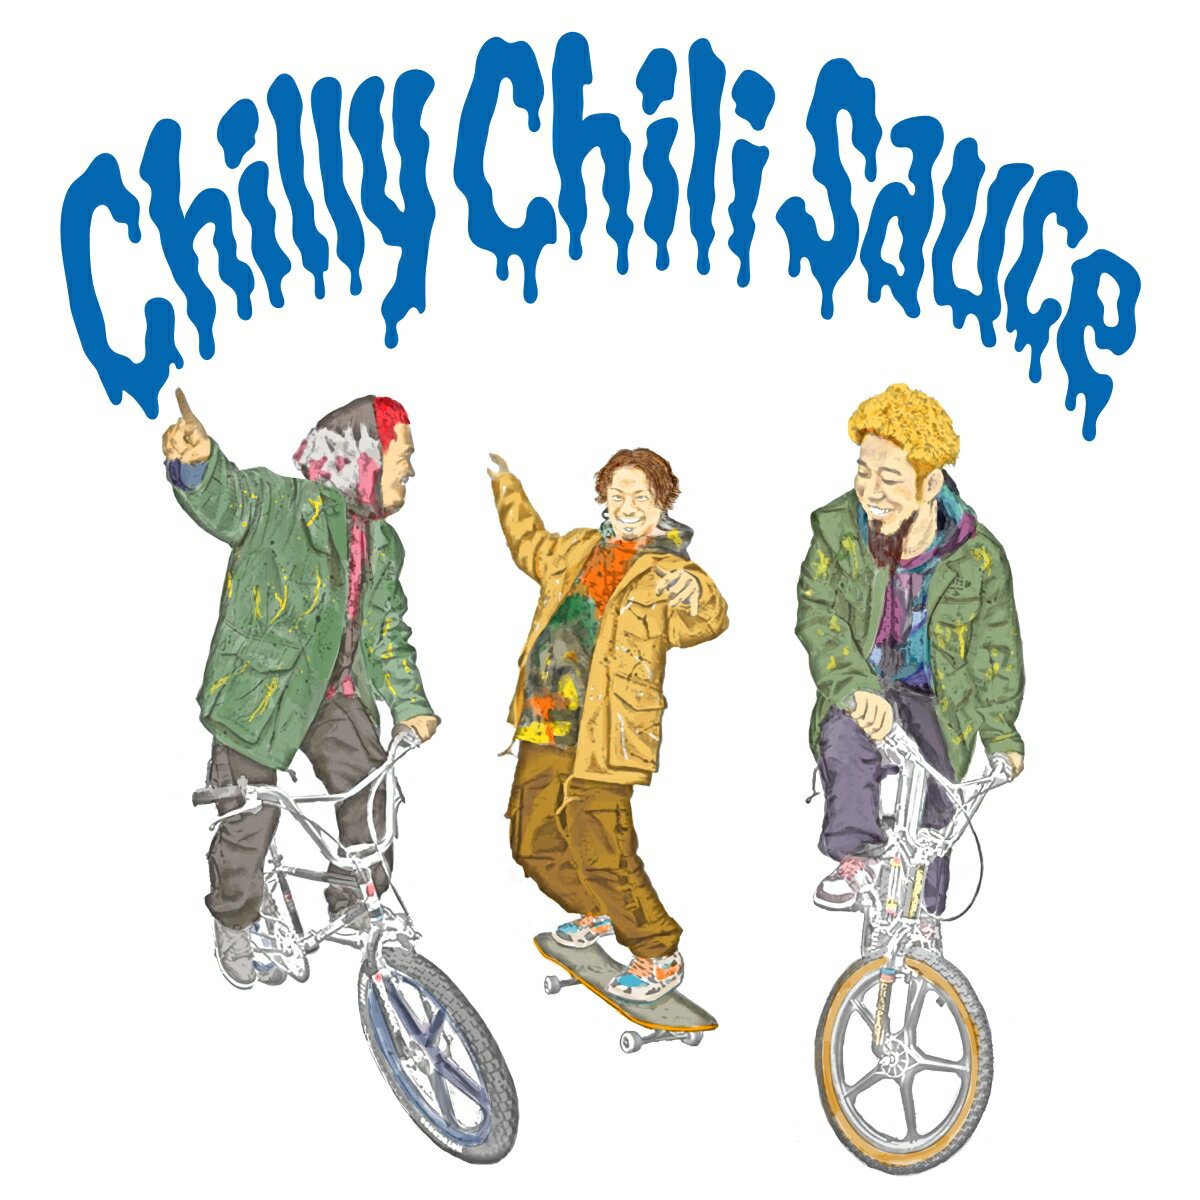 Chilly Chili Sauce 初回限定盤 CD＋DVD [ WANIMA ]